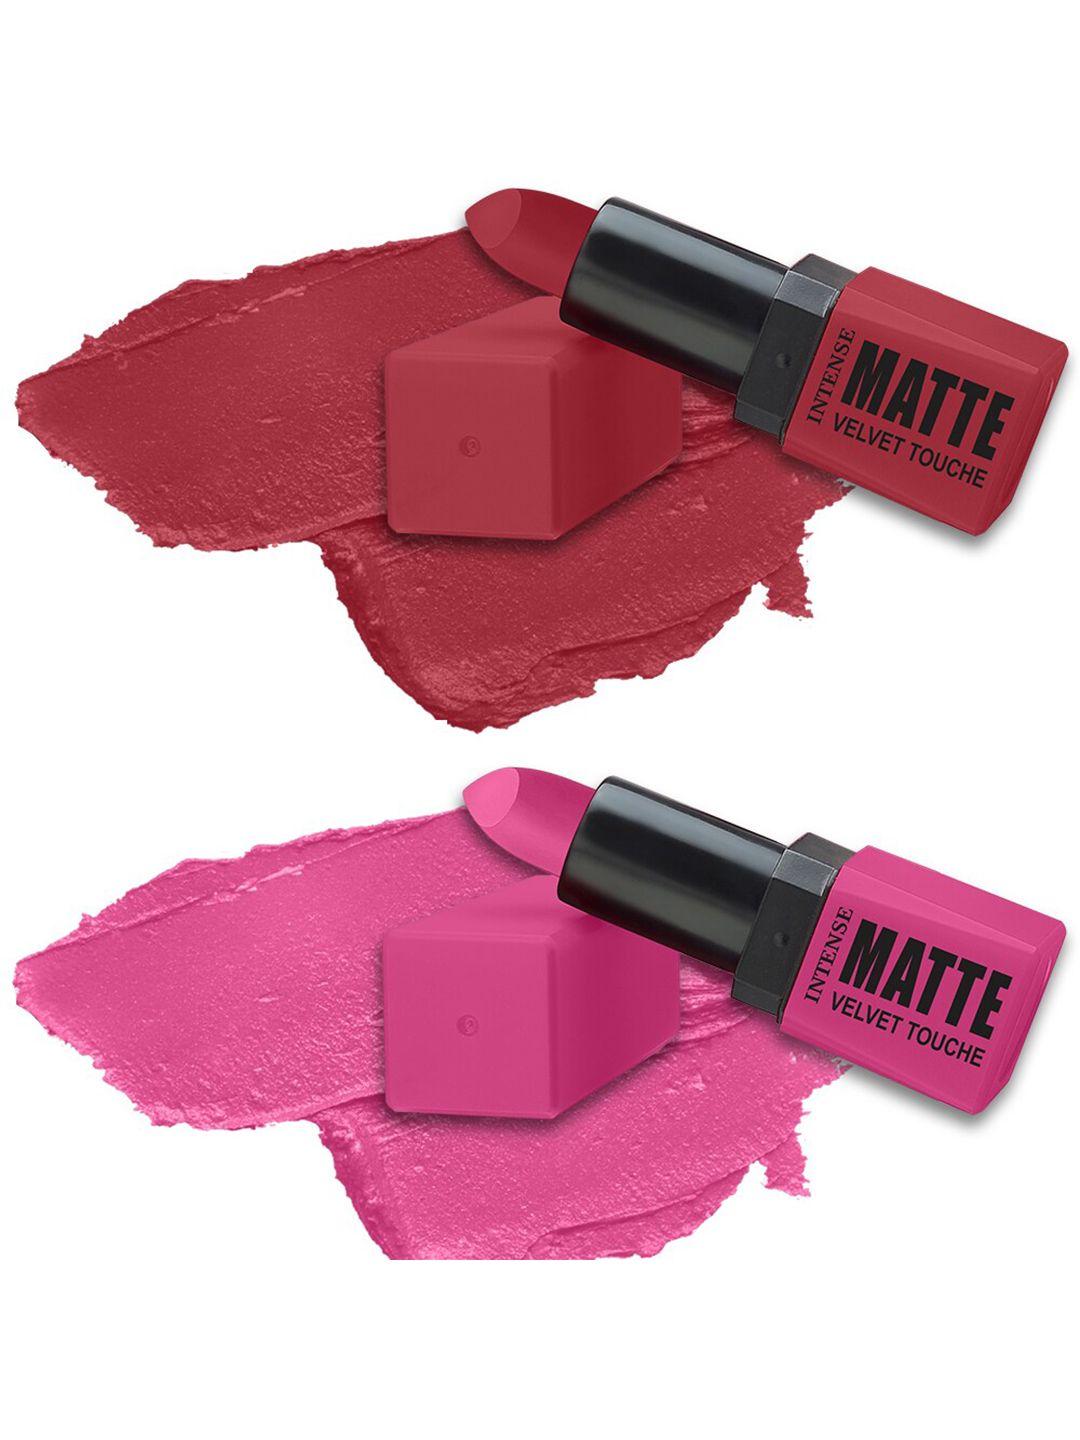 forsure-set-of-2-intense-matte-velvet-touche-long-lasting-lipsticks-3.5g-each---309-&-303